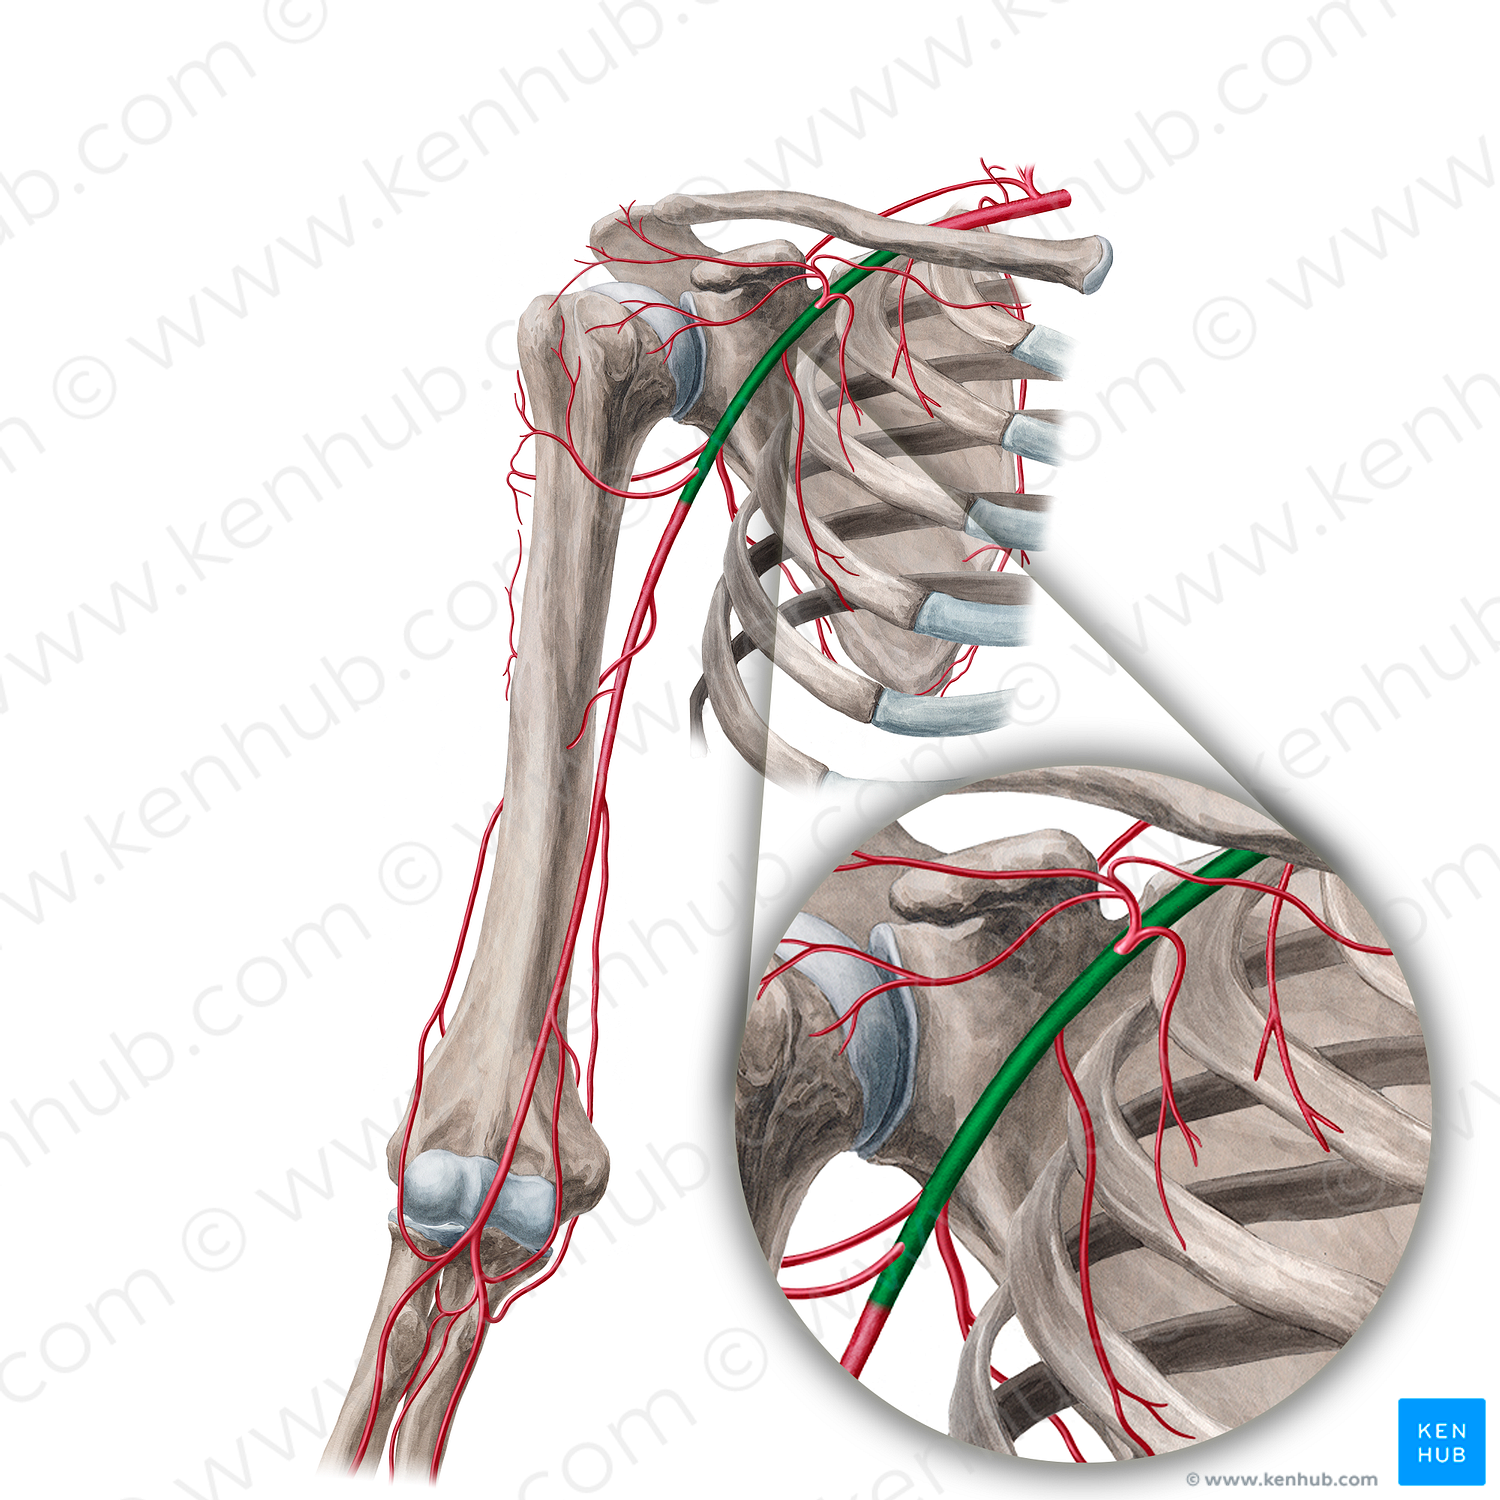 Axillary artery (#890)